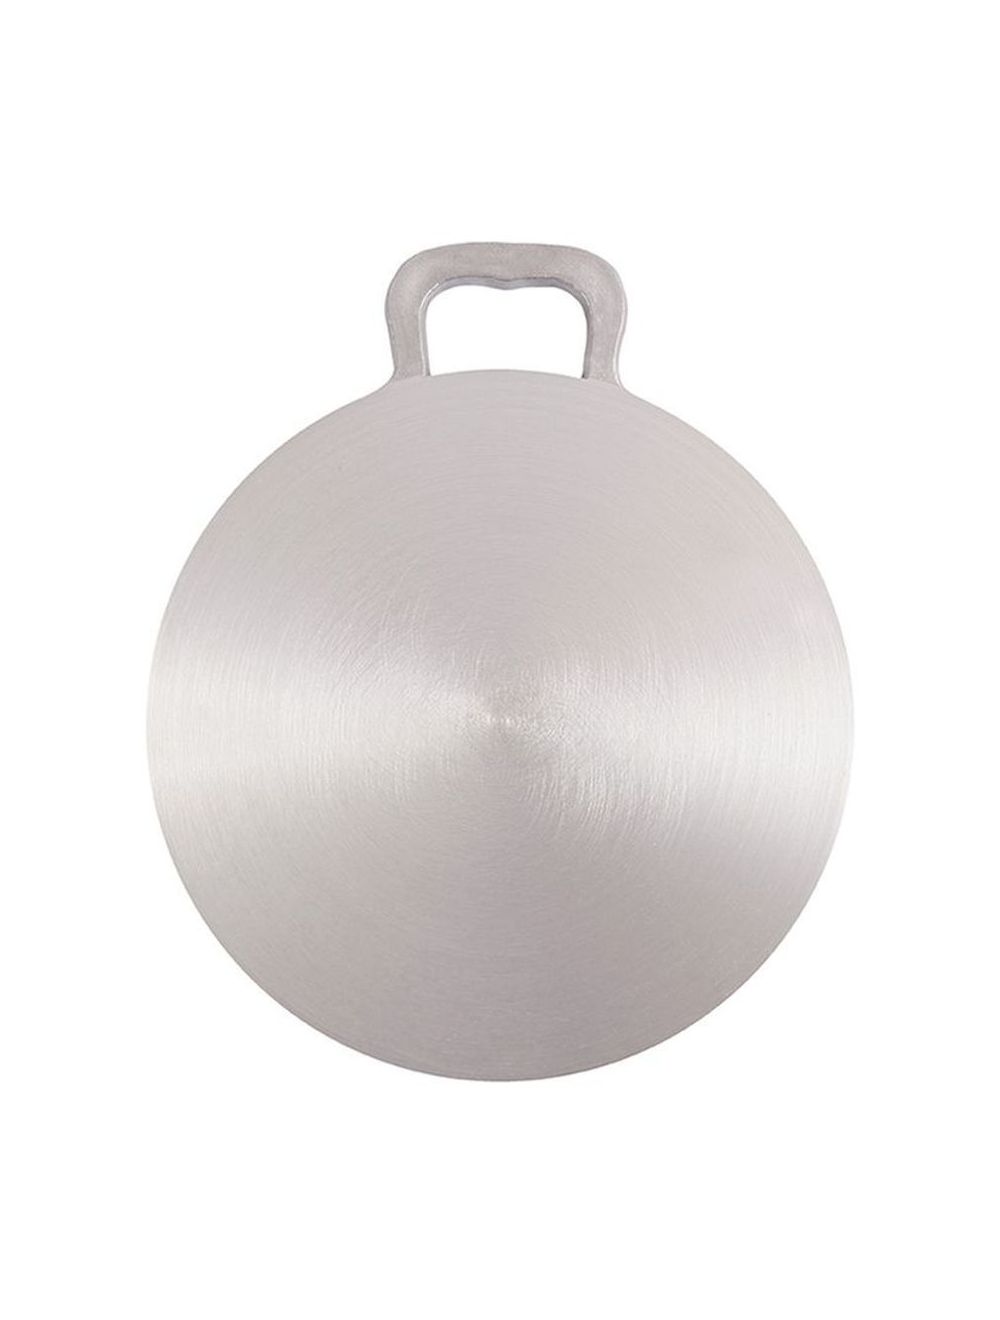 Raj Aluminium Arabic Tawa Silver ,40 cm - RAAT40